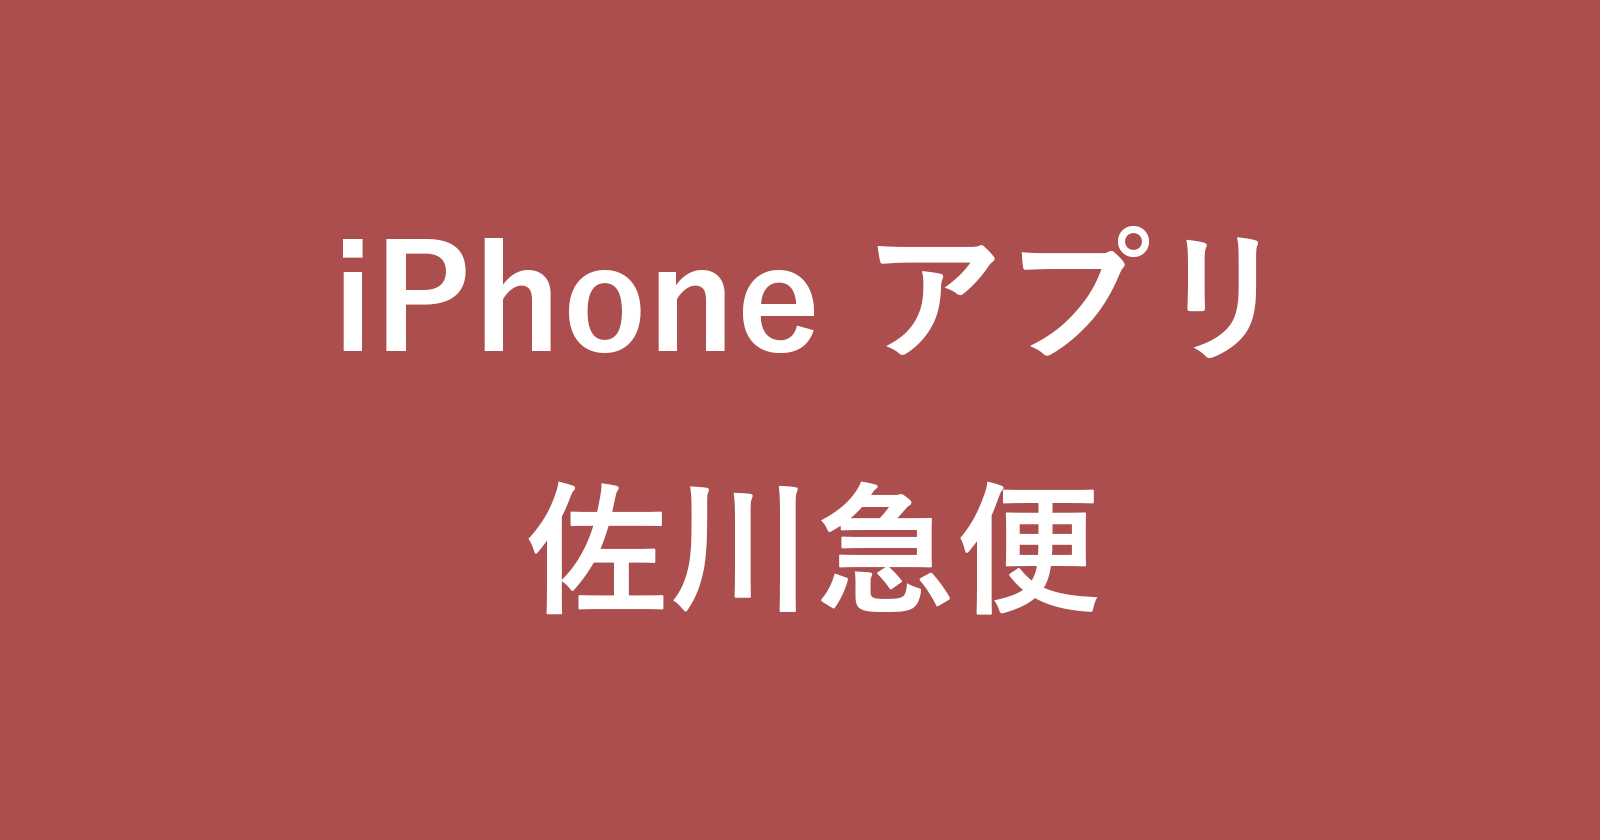 iphone app sagawa